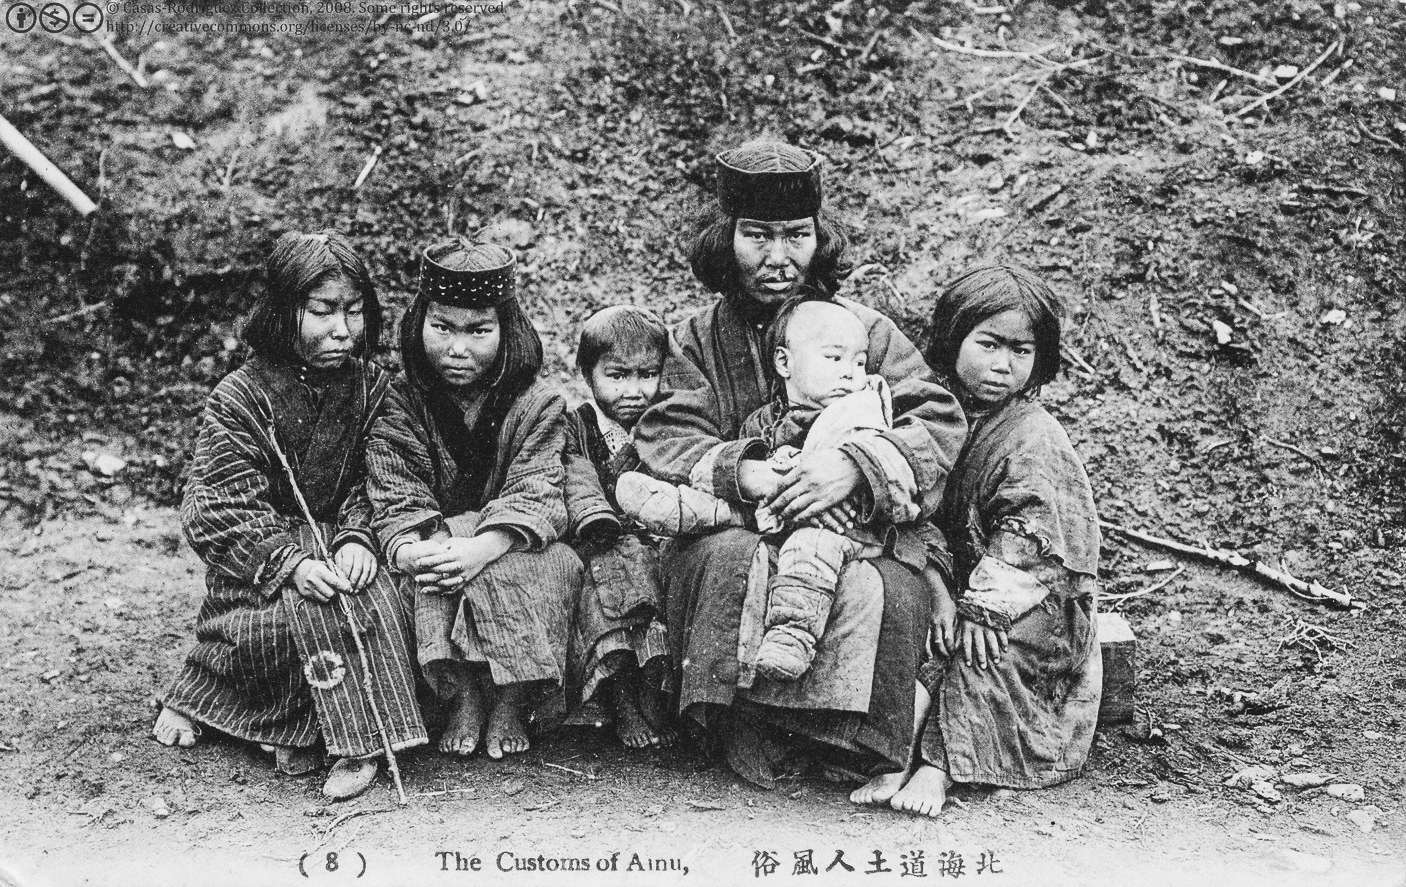 Ainu (သမိုင်းစာများတွင် Ezo ဟုလည်းခေါ်သည်) သည် ဟော့ကိုင်းဒိုး၊ Kuril ကျွန်းများနှင့် Sakhalin အများစု၏ ဌာနေတိုင်းရင်းသားမျိုးနွယ်စုဖြစ်သည်။ ယနေ့တွင် Ainu 150,000 ကျော် ဖြစ်နိုင်ချေရှိသည်။ သို့သော်လည်း Ainu အများစုသည် ဂျပန်နိုင်ငံရှိ လူမျိုးရေးပြဿနာများကြောင့် ၎င်းတို့၏ဇာစ်မြစ်ကို ဖုံးကွယ်ထားသောကြောင့် အတိအကျမသိရသေးပေ။